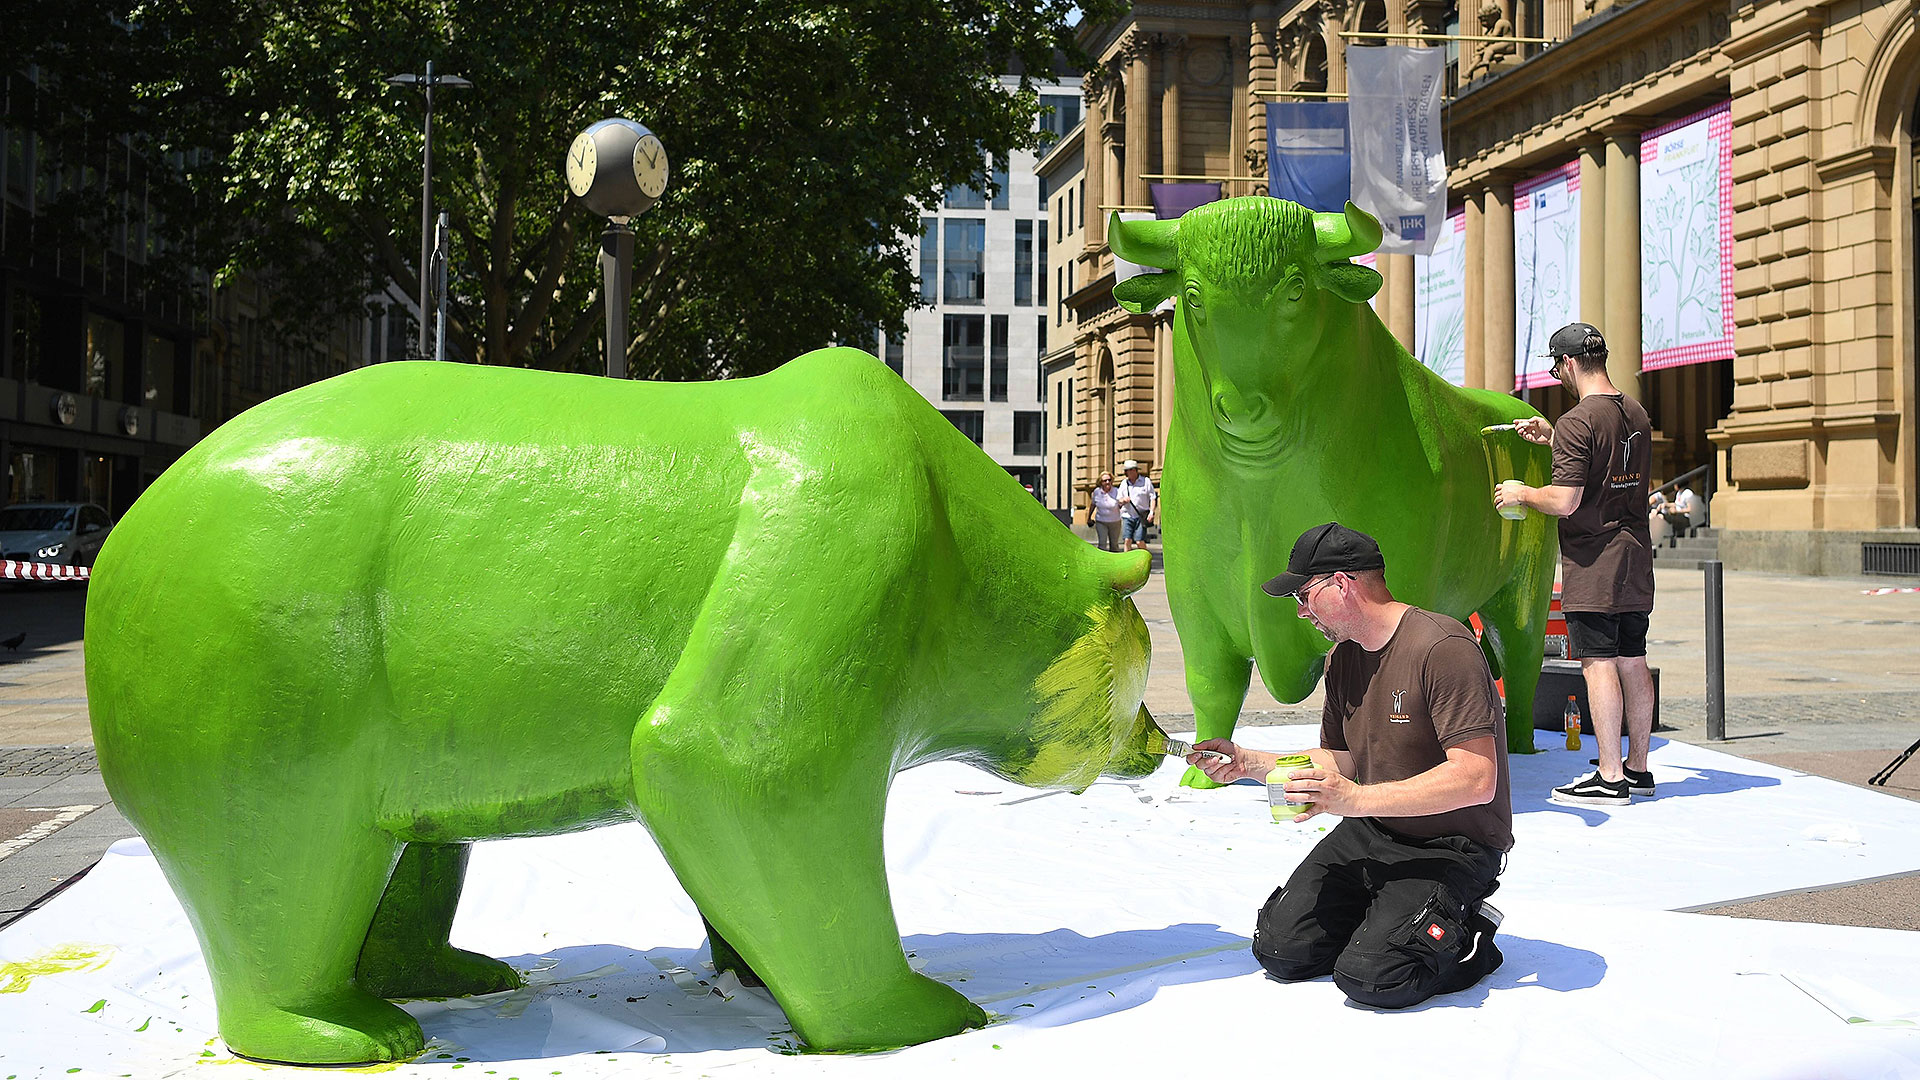 Bulle und Bär vor der Frankfurter Börse werden grün angemalt (Aktion zum "Grüne Soße Tag", 03.06.2019)